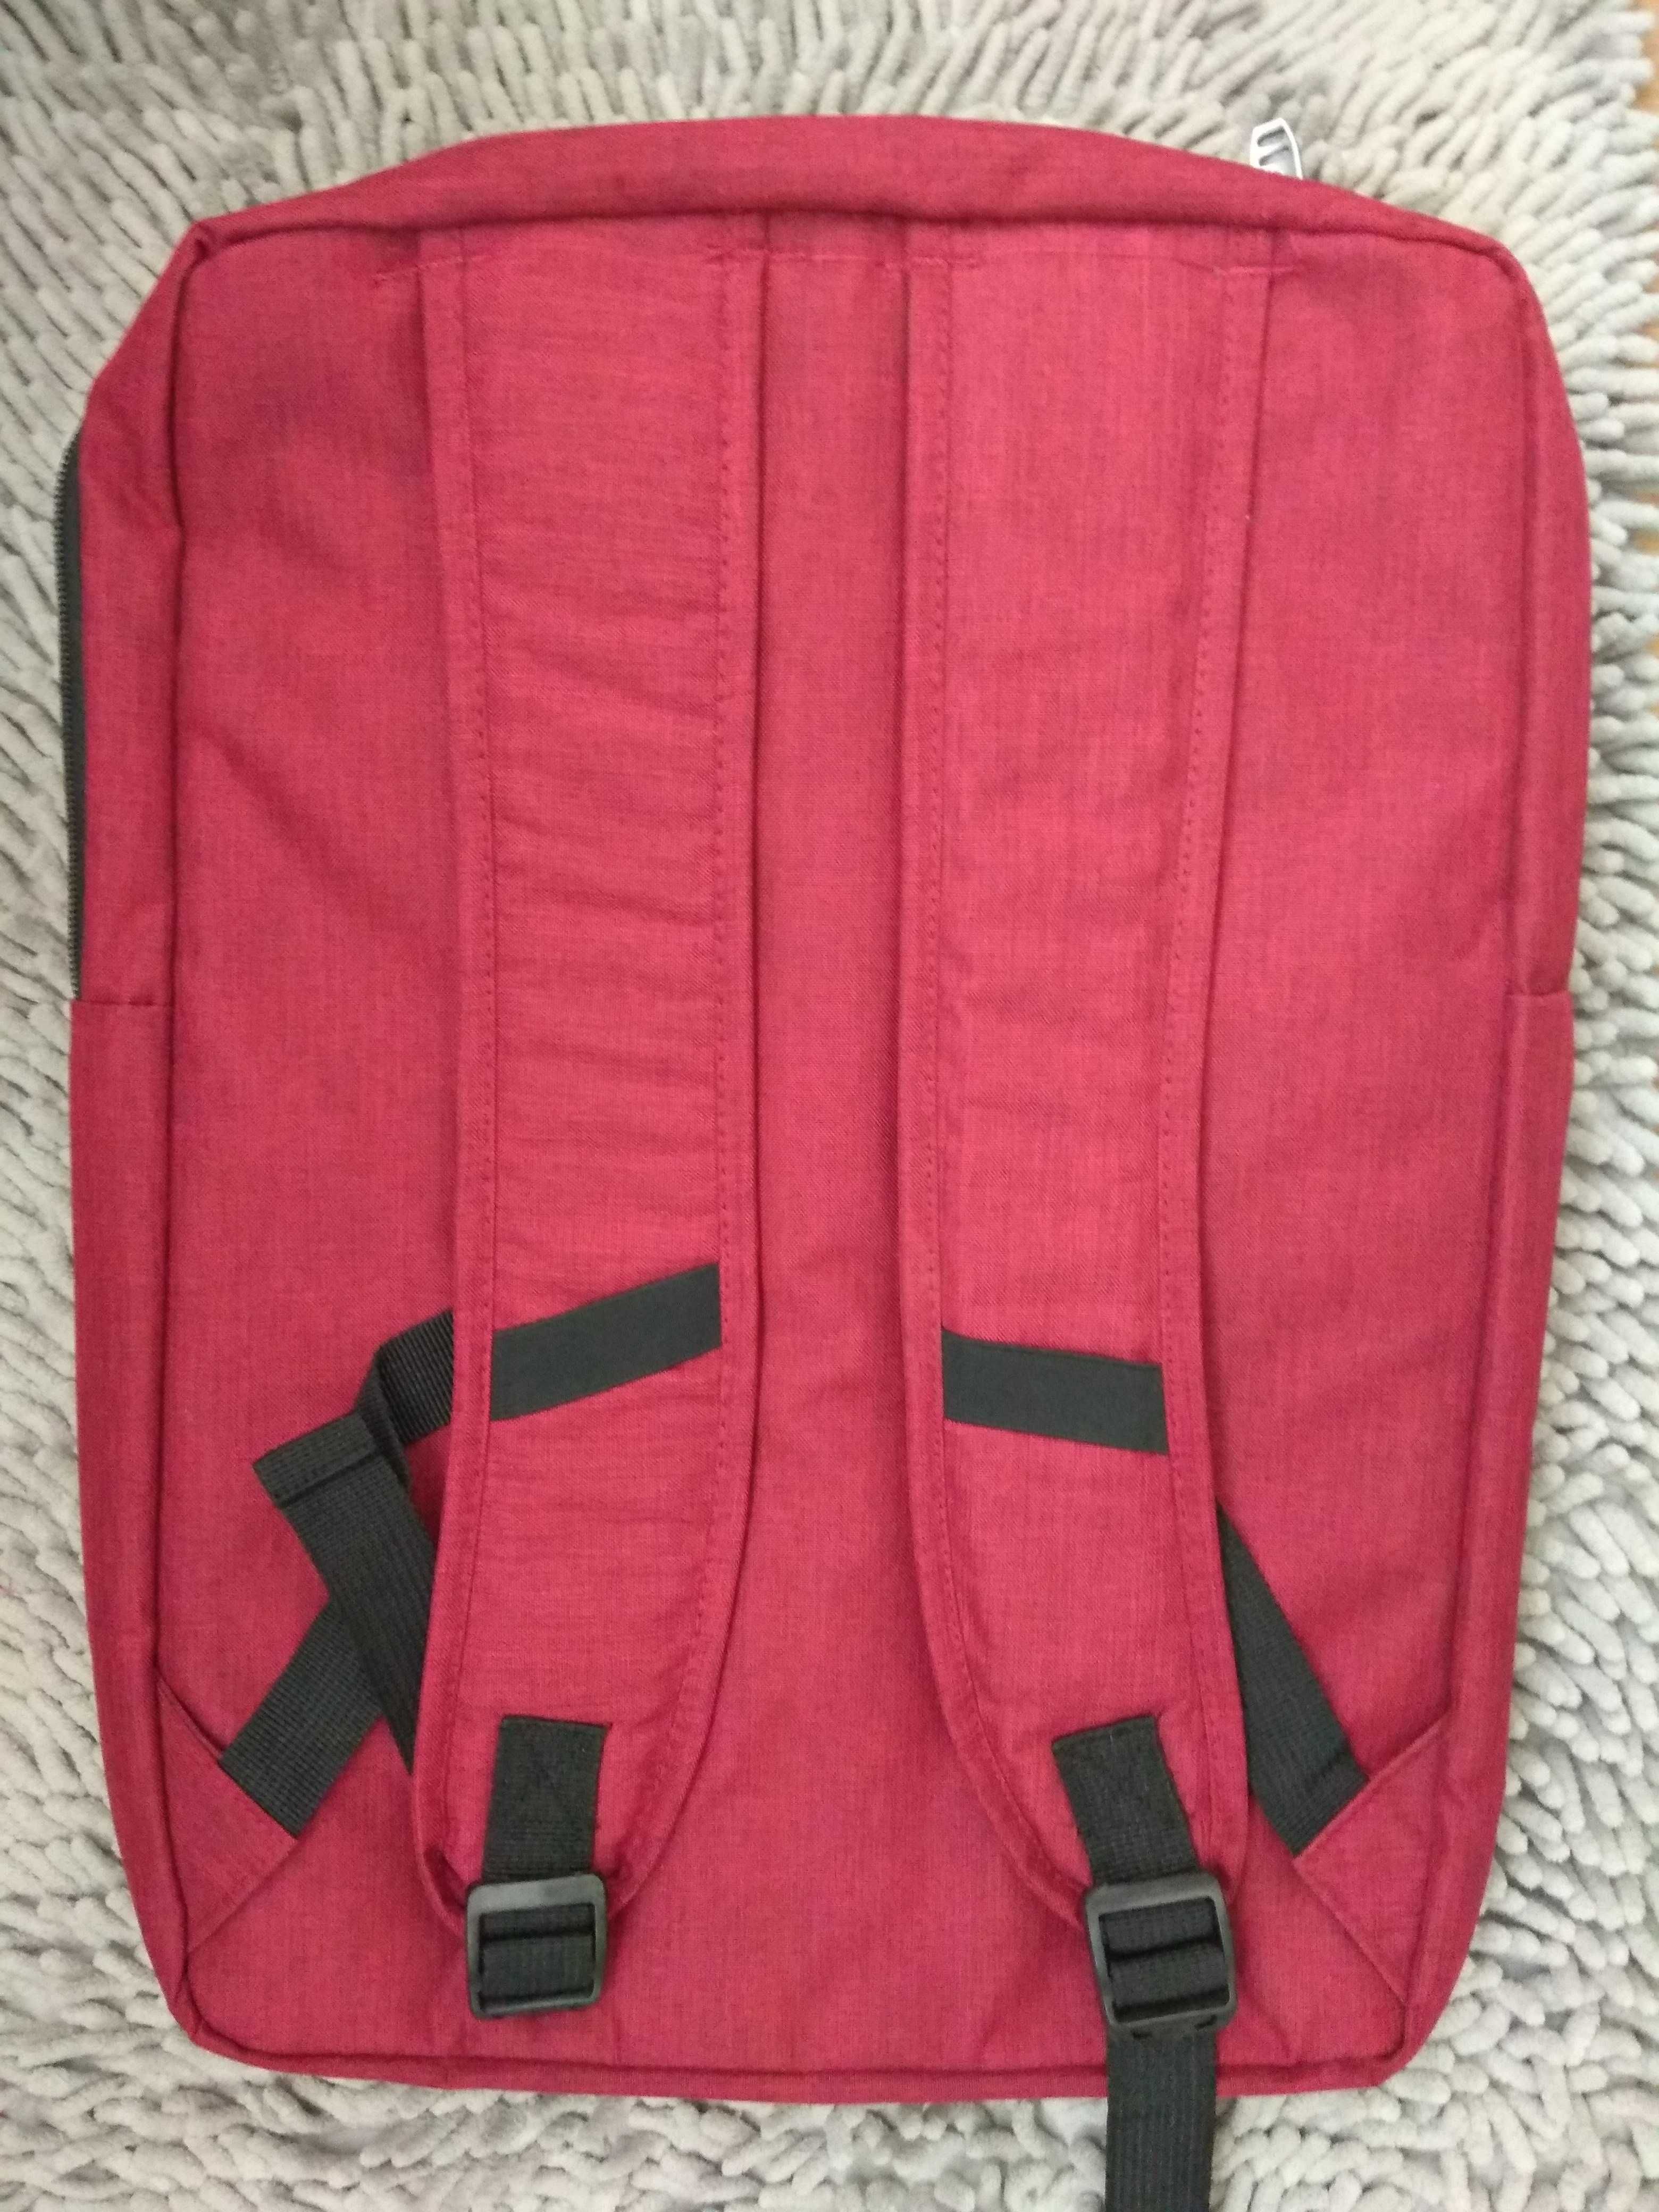 Новый отличный супер рюкзак под ноутбук до 15,6 дюймов двух цветов